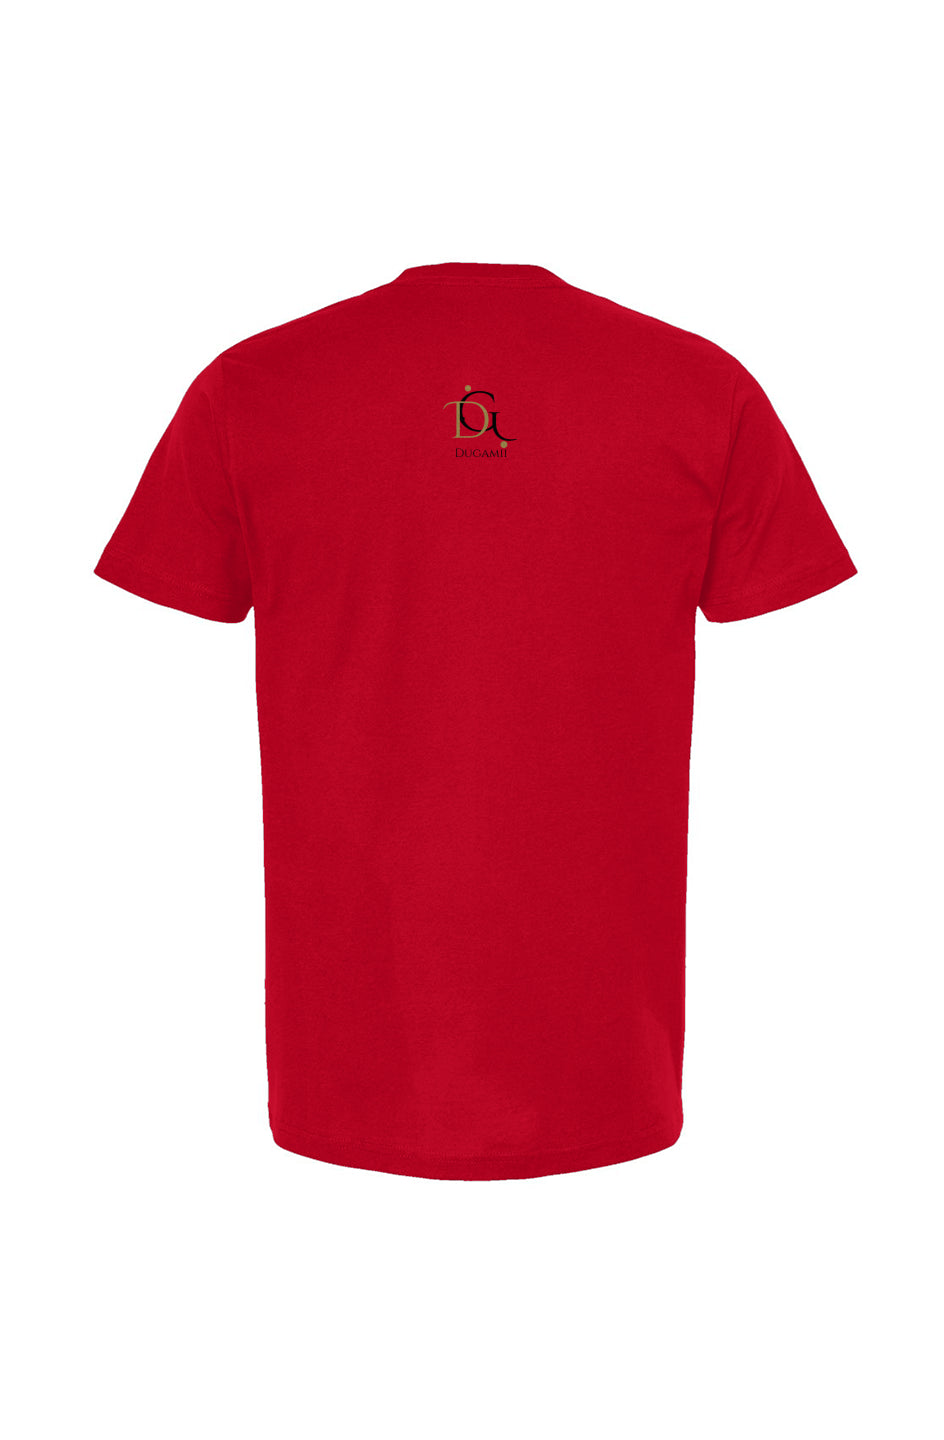 DuGamii Signature Classic Cotton Unisex Red T-Shirt